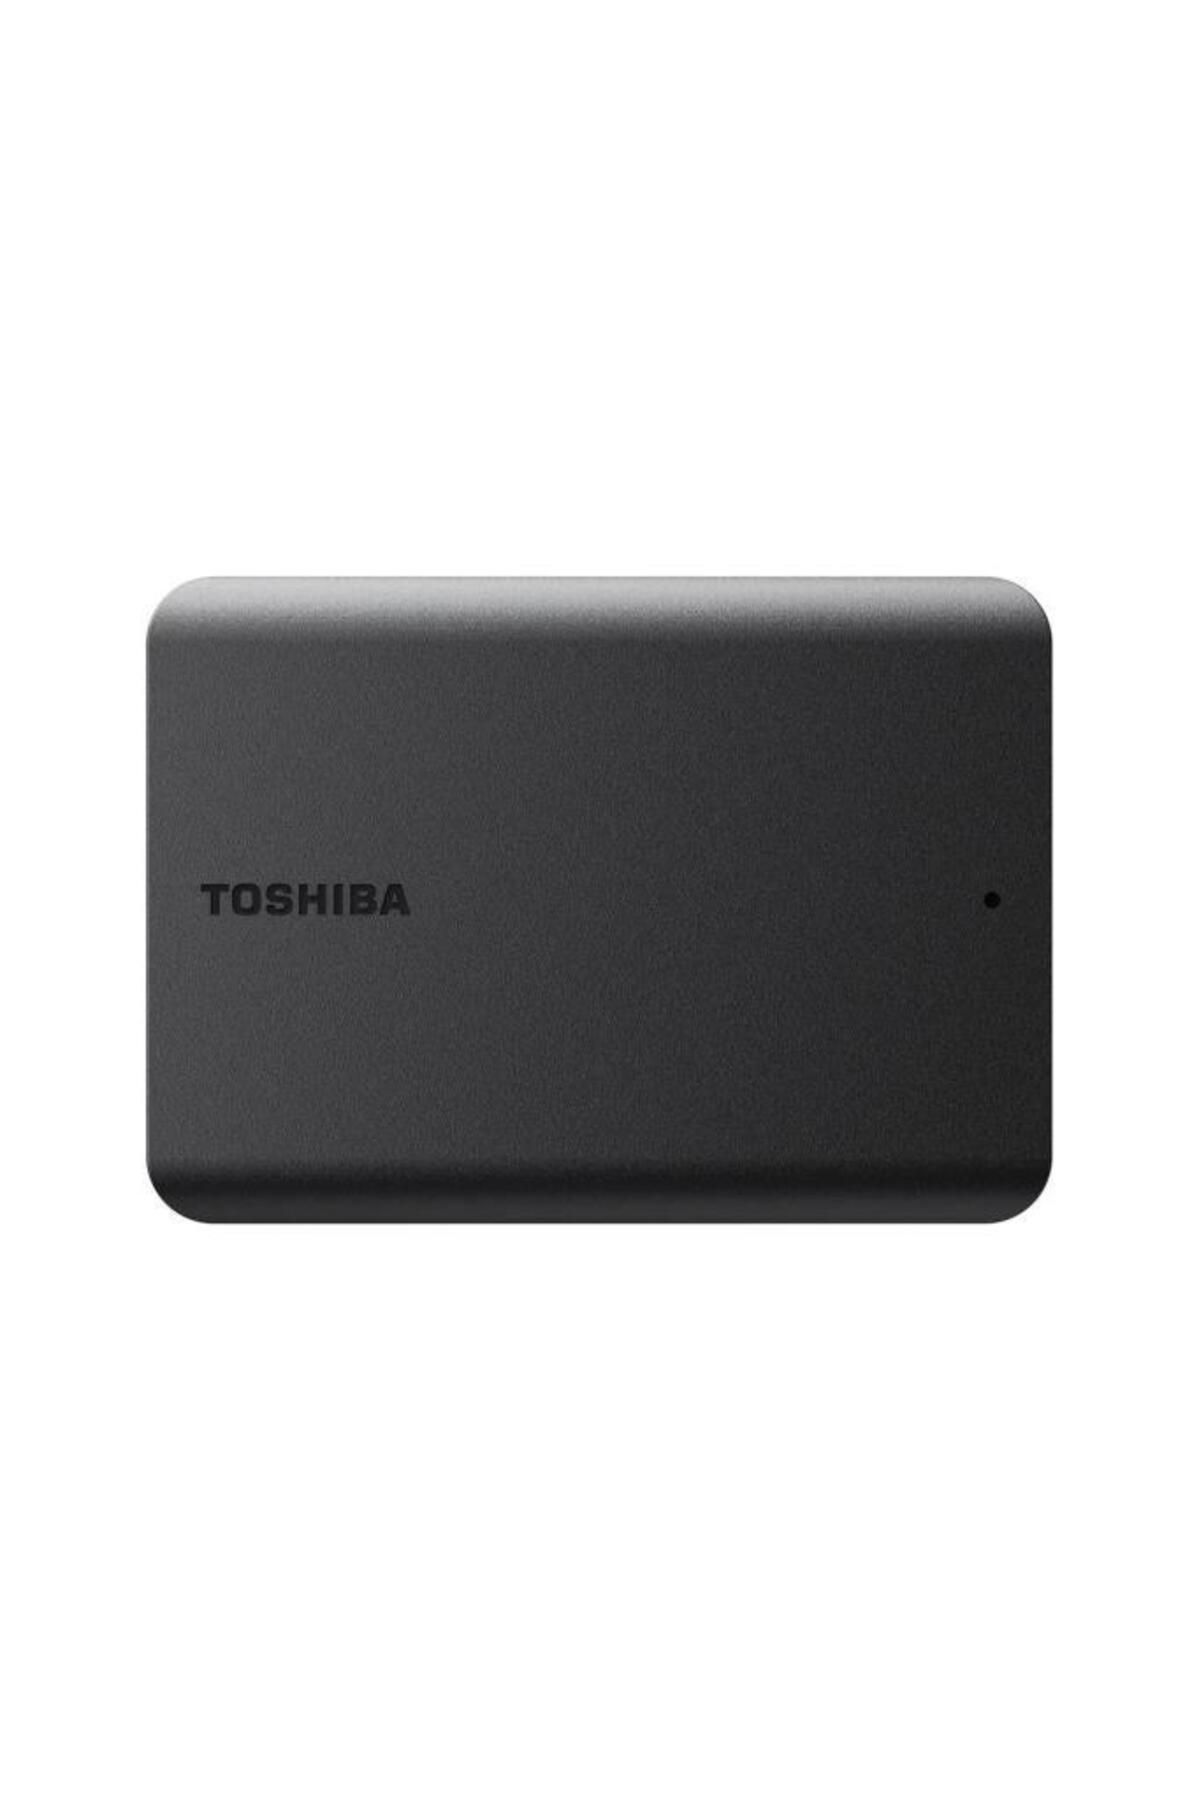 Toshiba Canvio Basic 2 Tb Hdtb520ek3aa 2.5 Inç Usb 3.0 Taşınabilir Disk